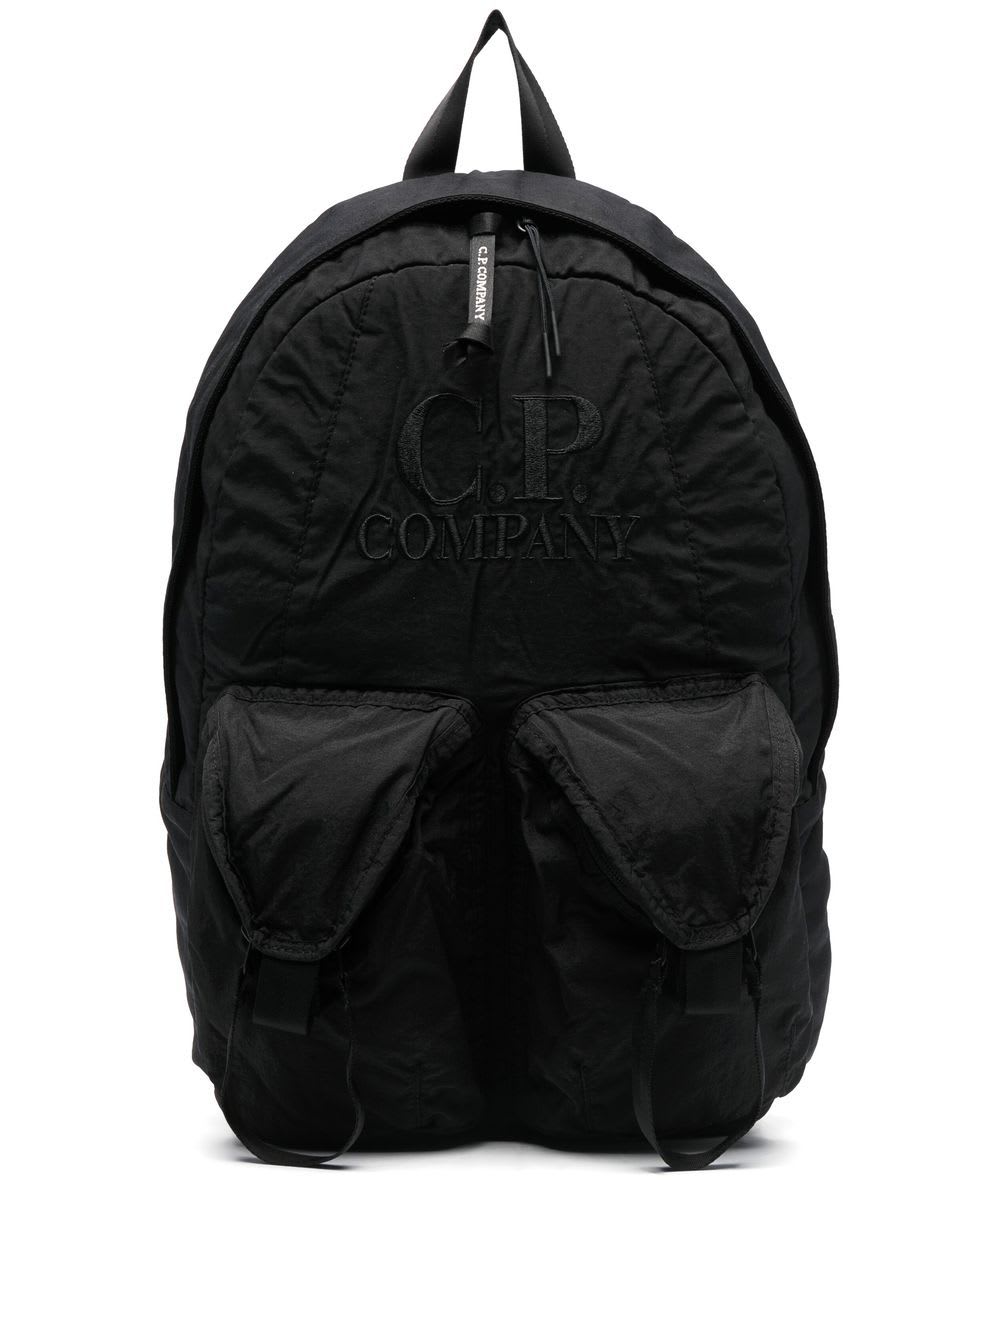 C.P. Company Taylon Mixed Backpack